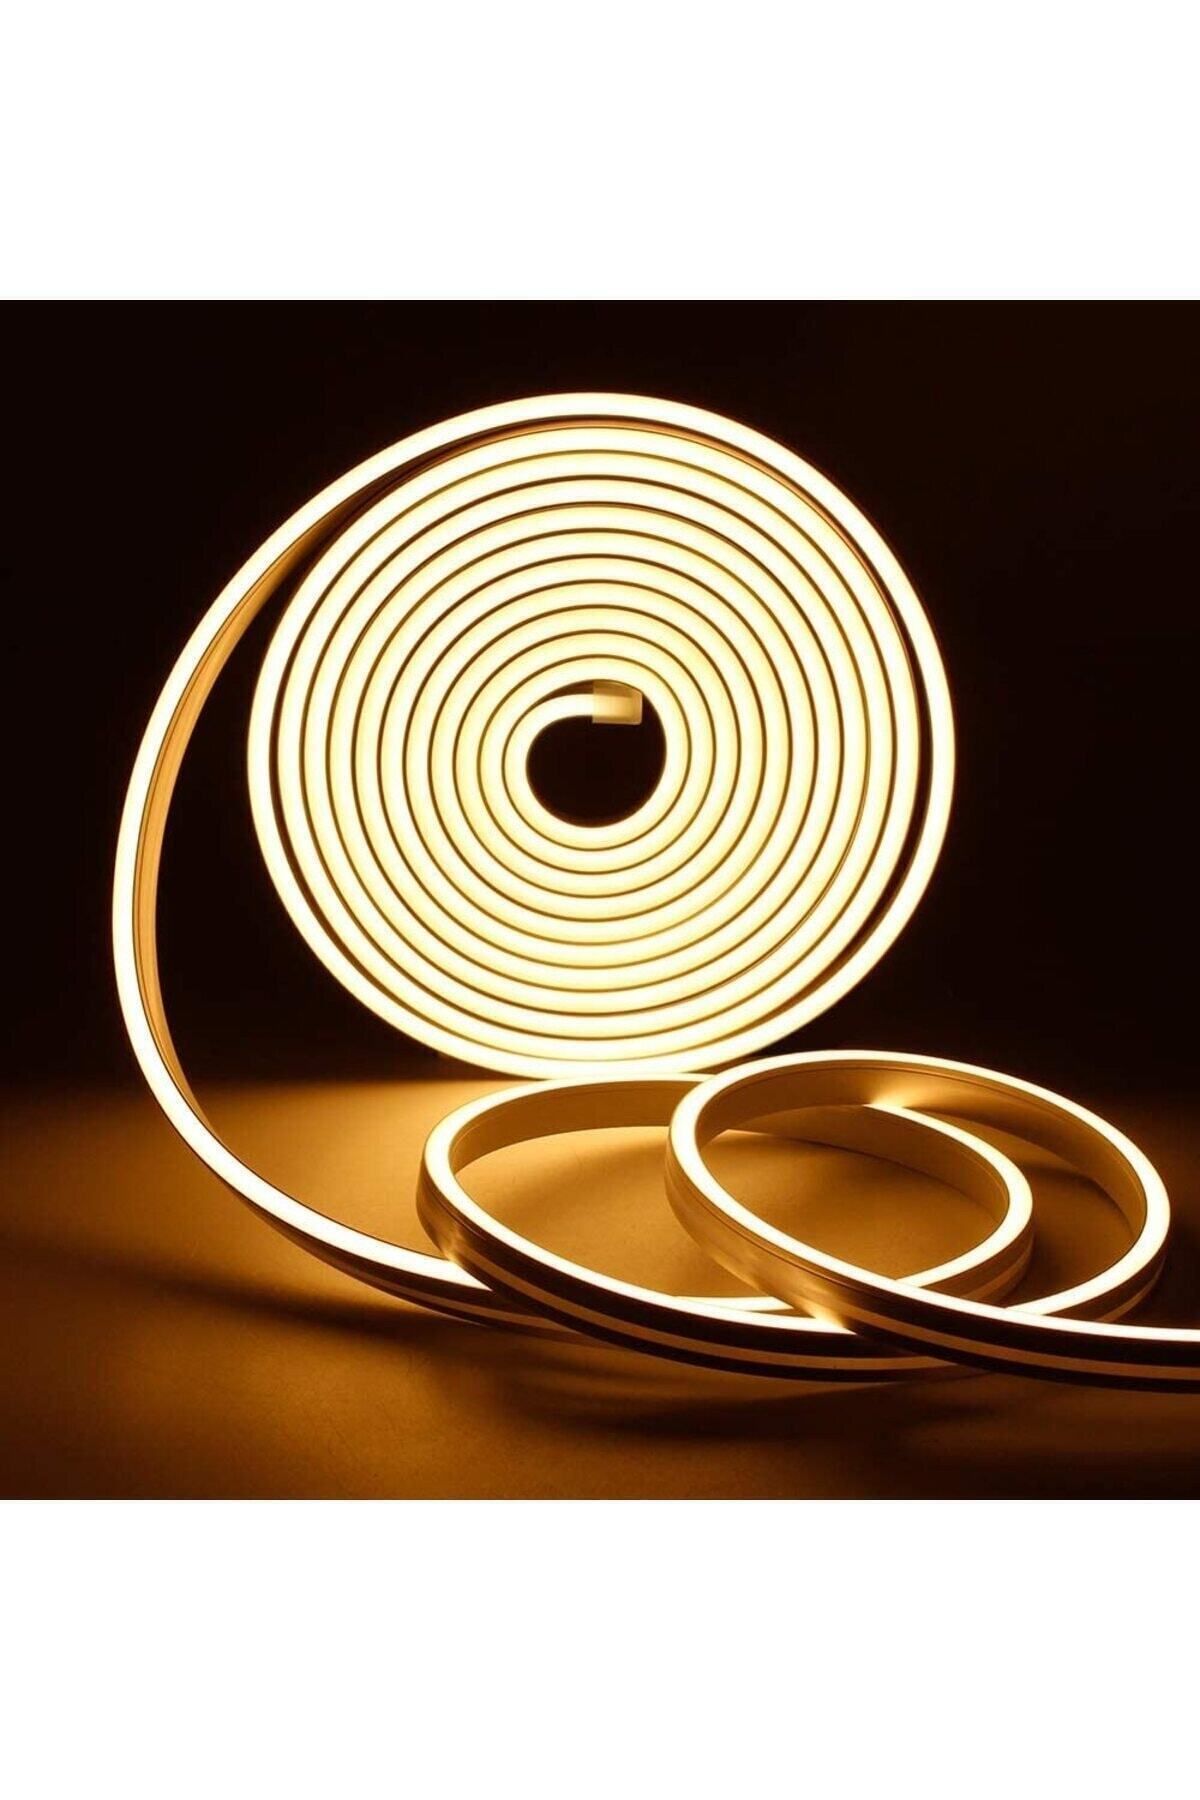 Ema Dükkan 12 Volt 5 Metre Gün Işığı Neon Led Işık Prize Takılmaya Hazır Değil Neon Şerit Led Esnek Silikonlu